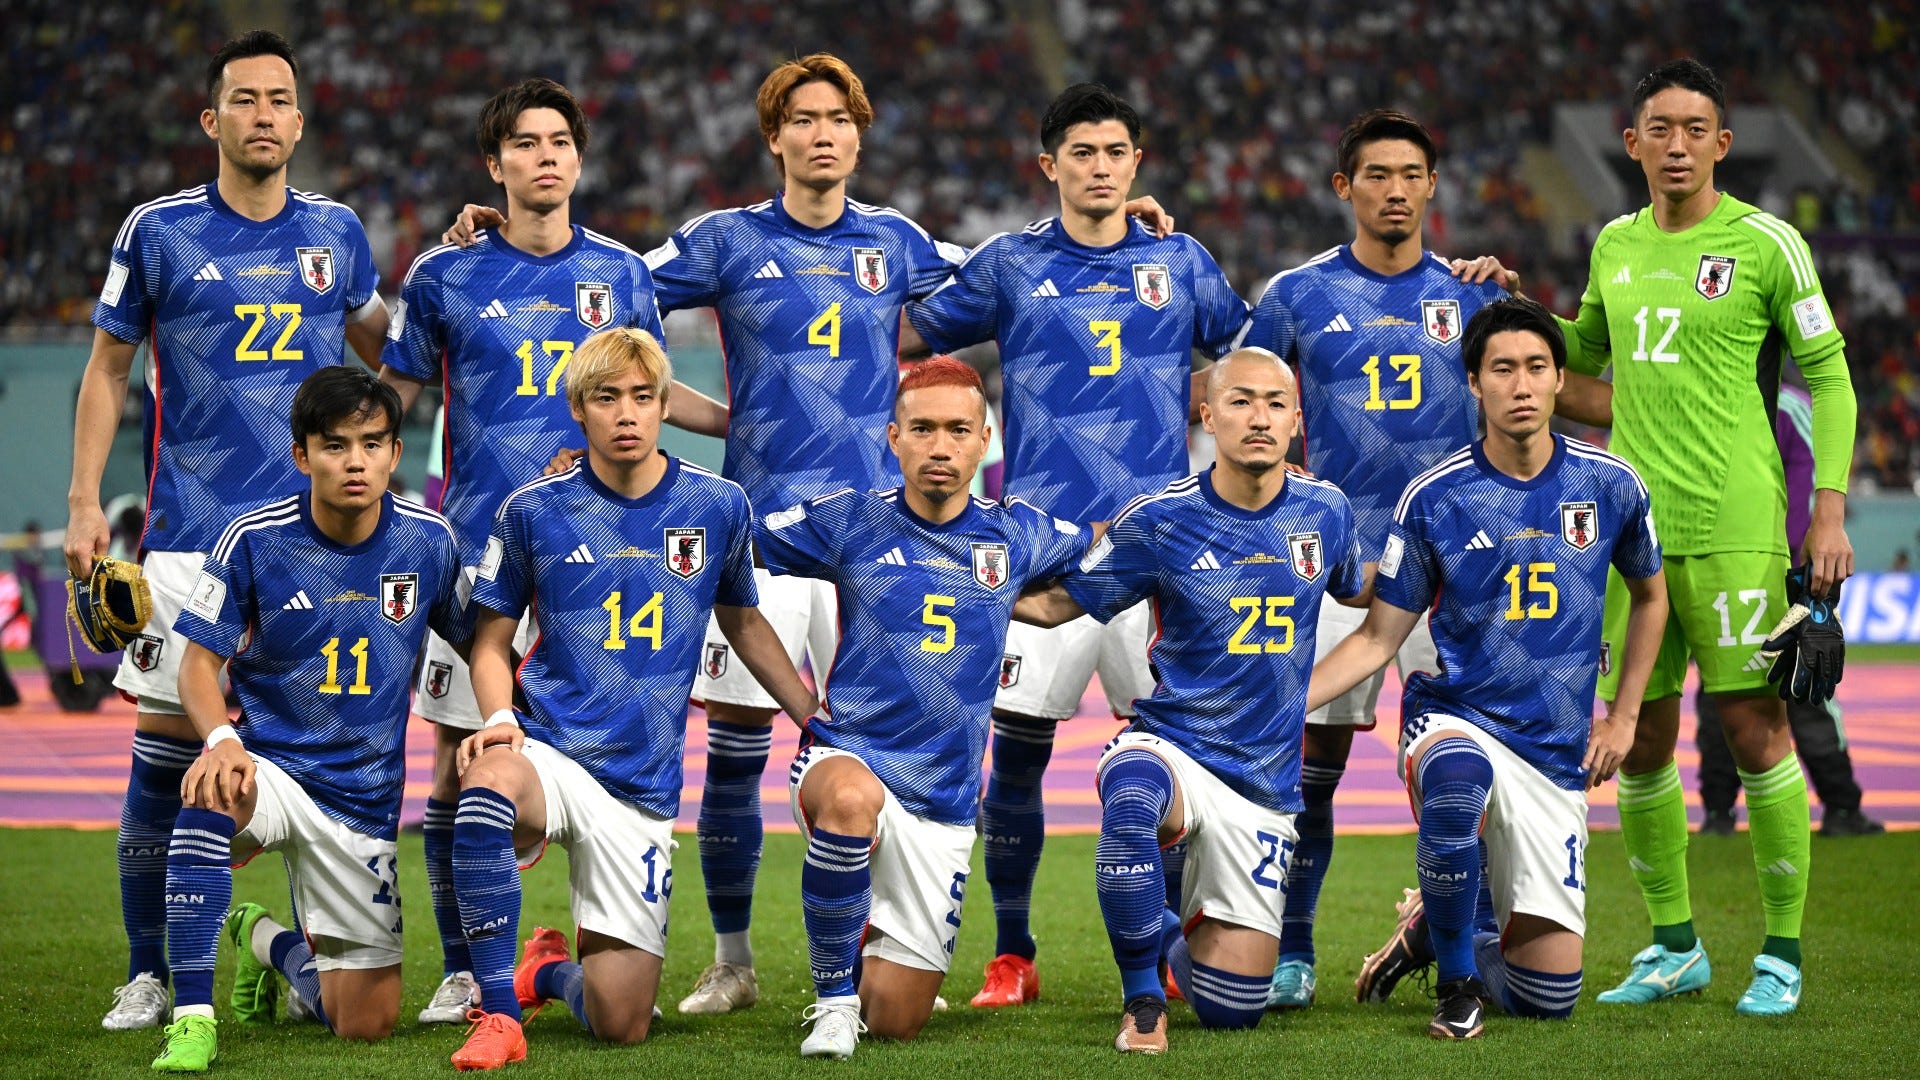 サッカー日本代表 23年の年間スケジュール W杯予選の予定は Goal Com 日本